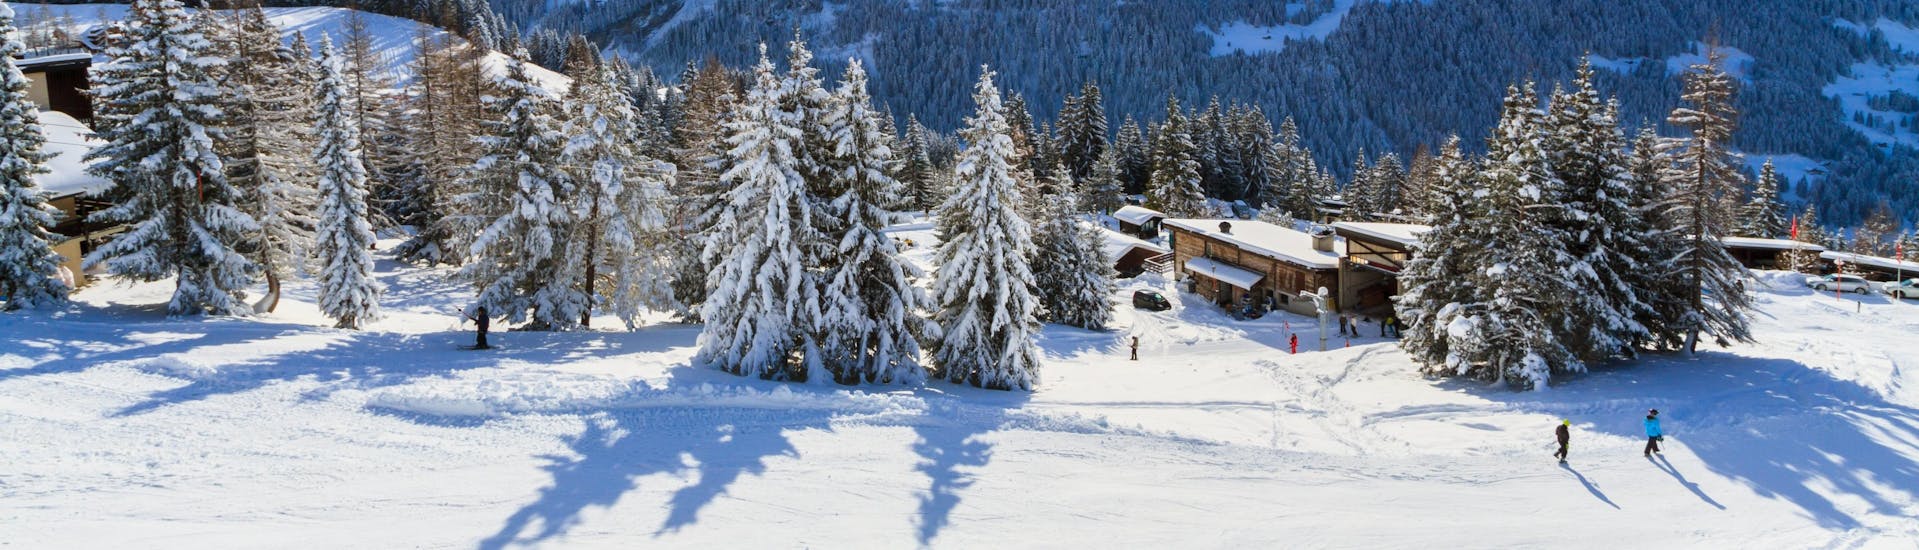 Une vue panoramique des pistes de ski et des montagnes environnantes de Villars, une station de ski suisse populaire dans le canton de Vaud où les visiteurs peuvent prendre des cours de ski avec une des écoles de ski locales.